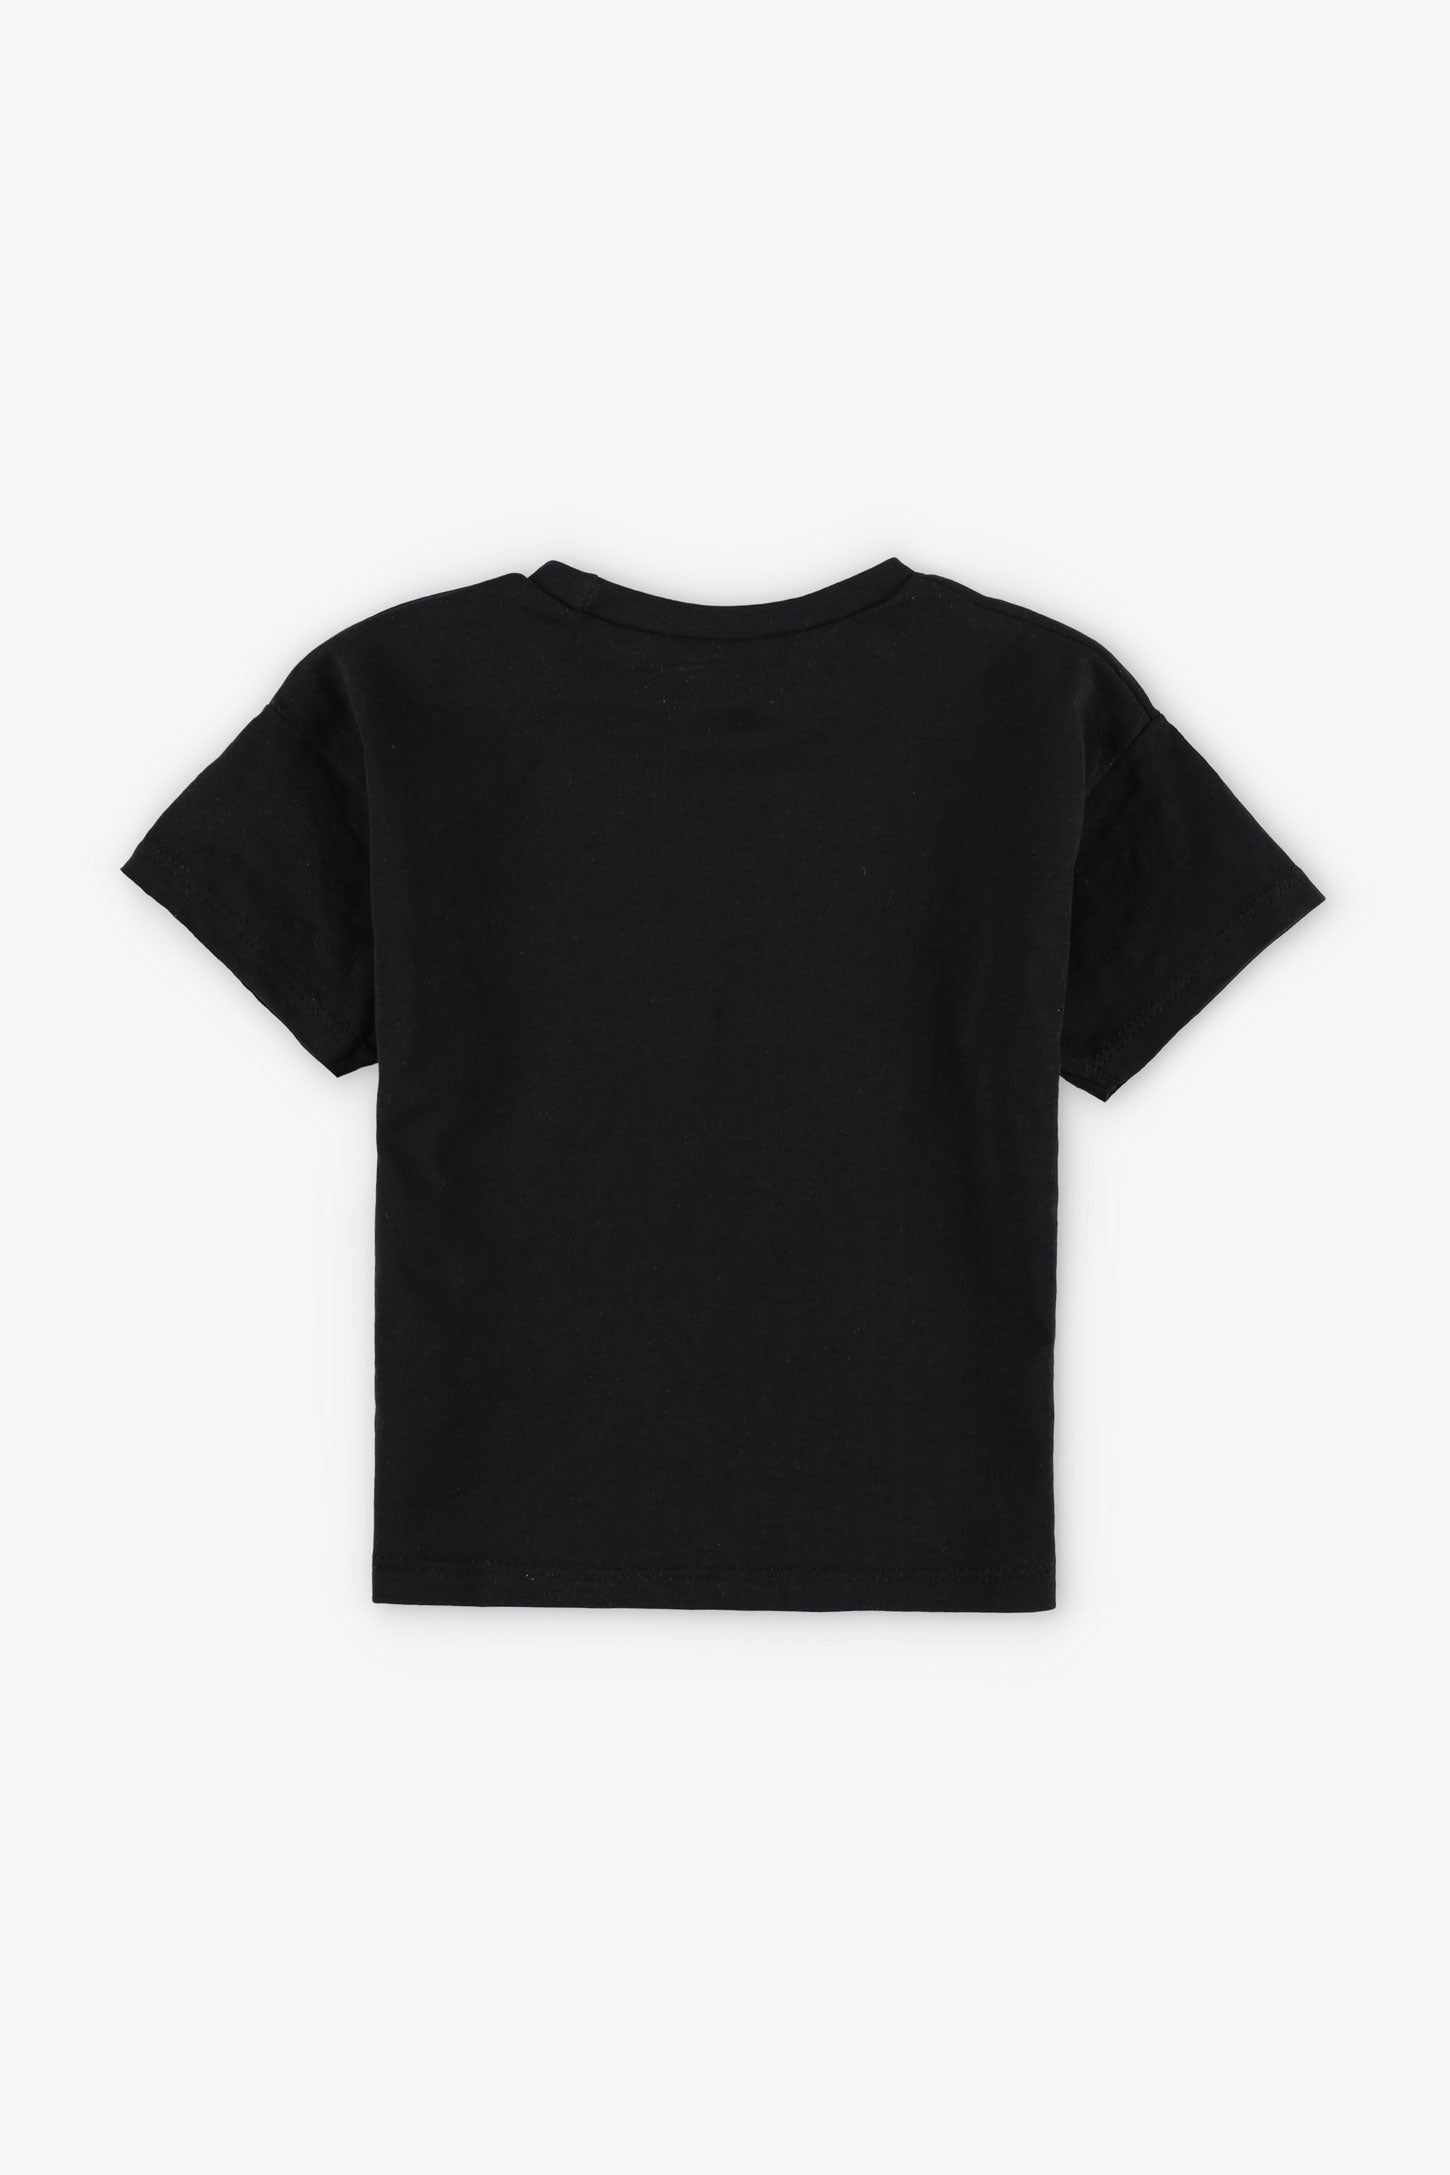 T-shirt coupe ample en coton, 2/15$ - Bébé garçon && NOIR